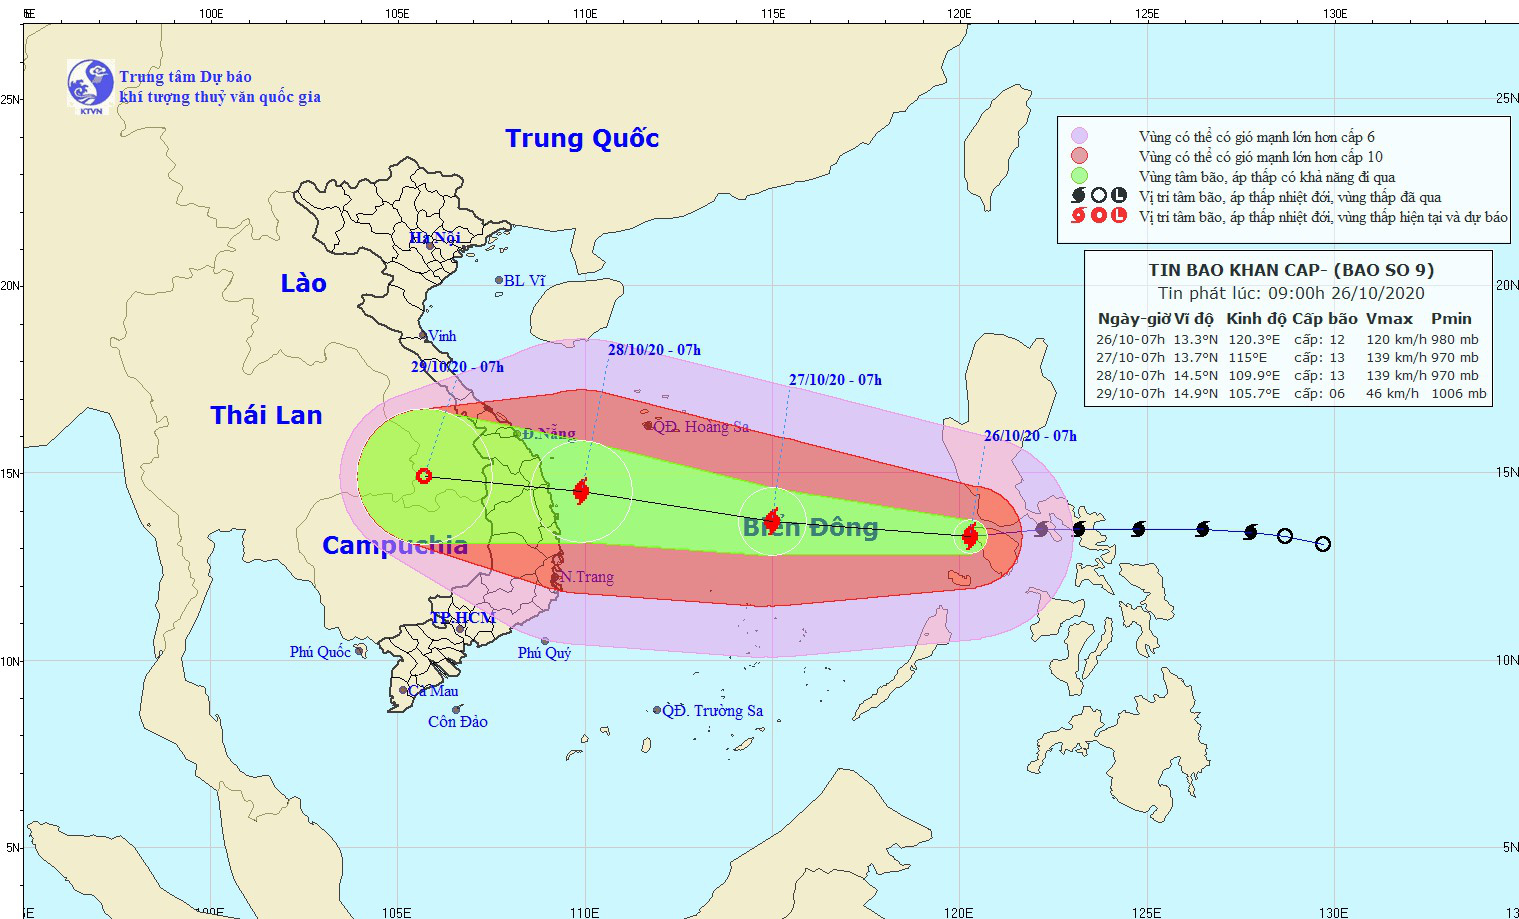 Khẩn cấp: Sáng 28/10, bão số 9 có thể đổ bộ Đà Nẵng - Phú Yên, nâng một cấp rủi ro thiên tai  - Ảnh 1.